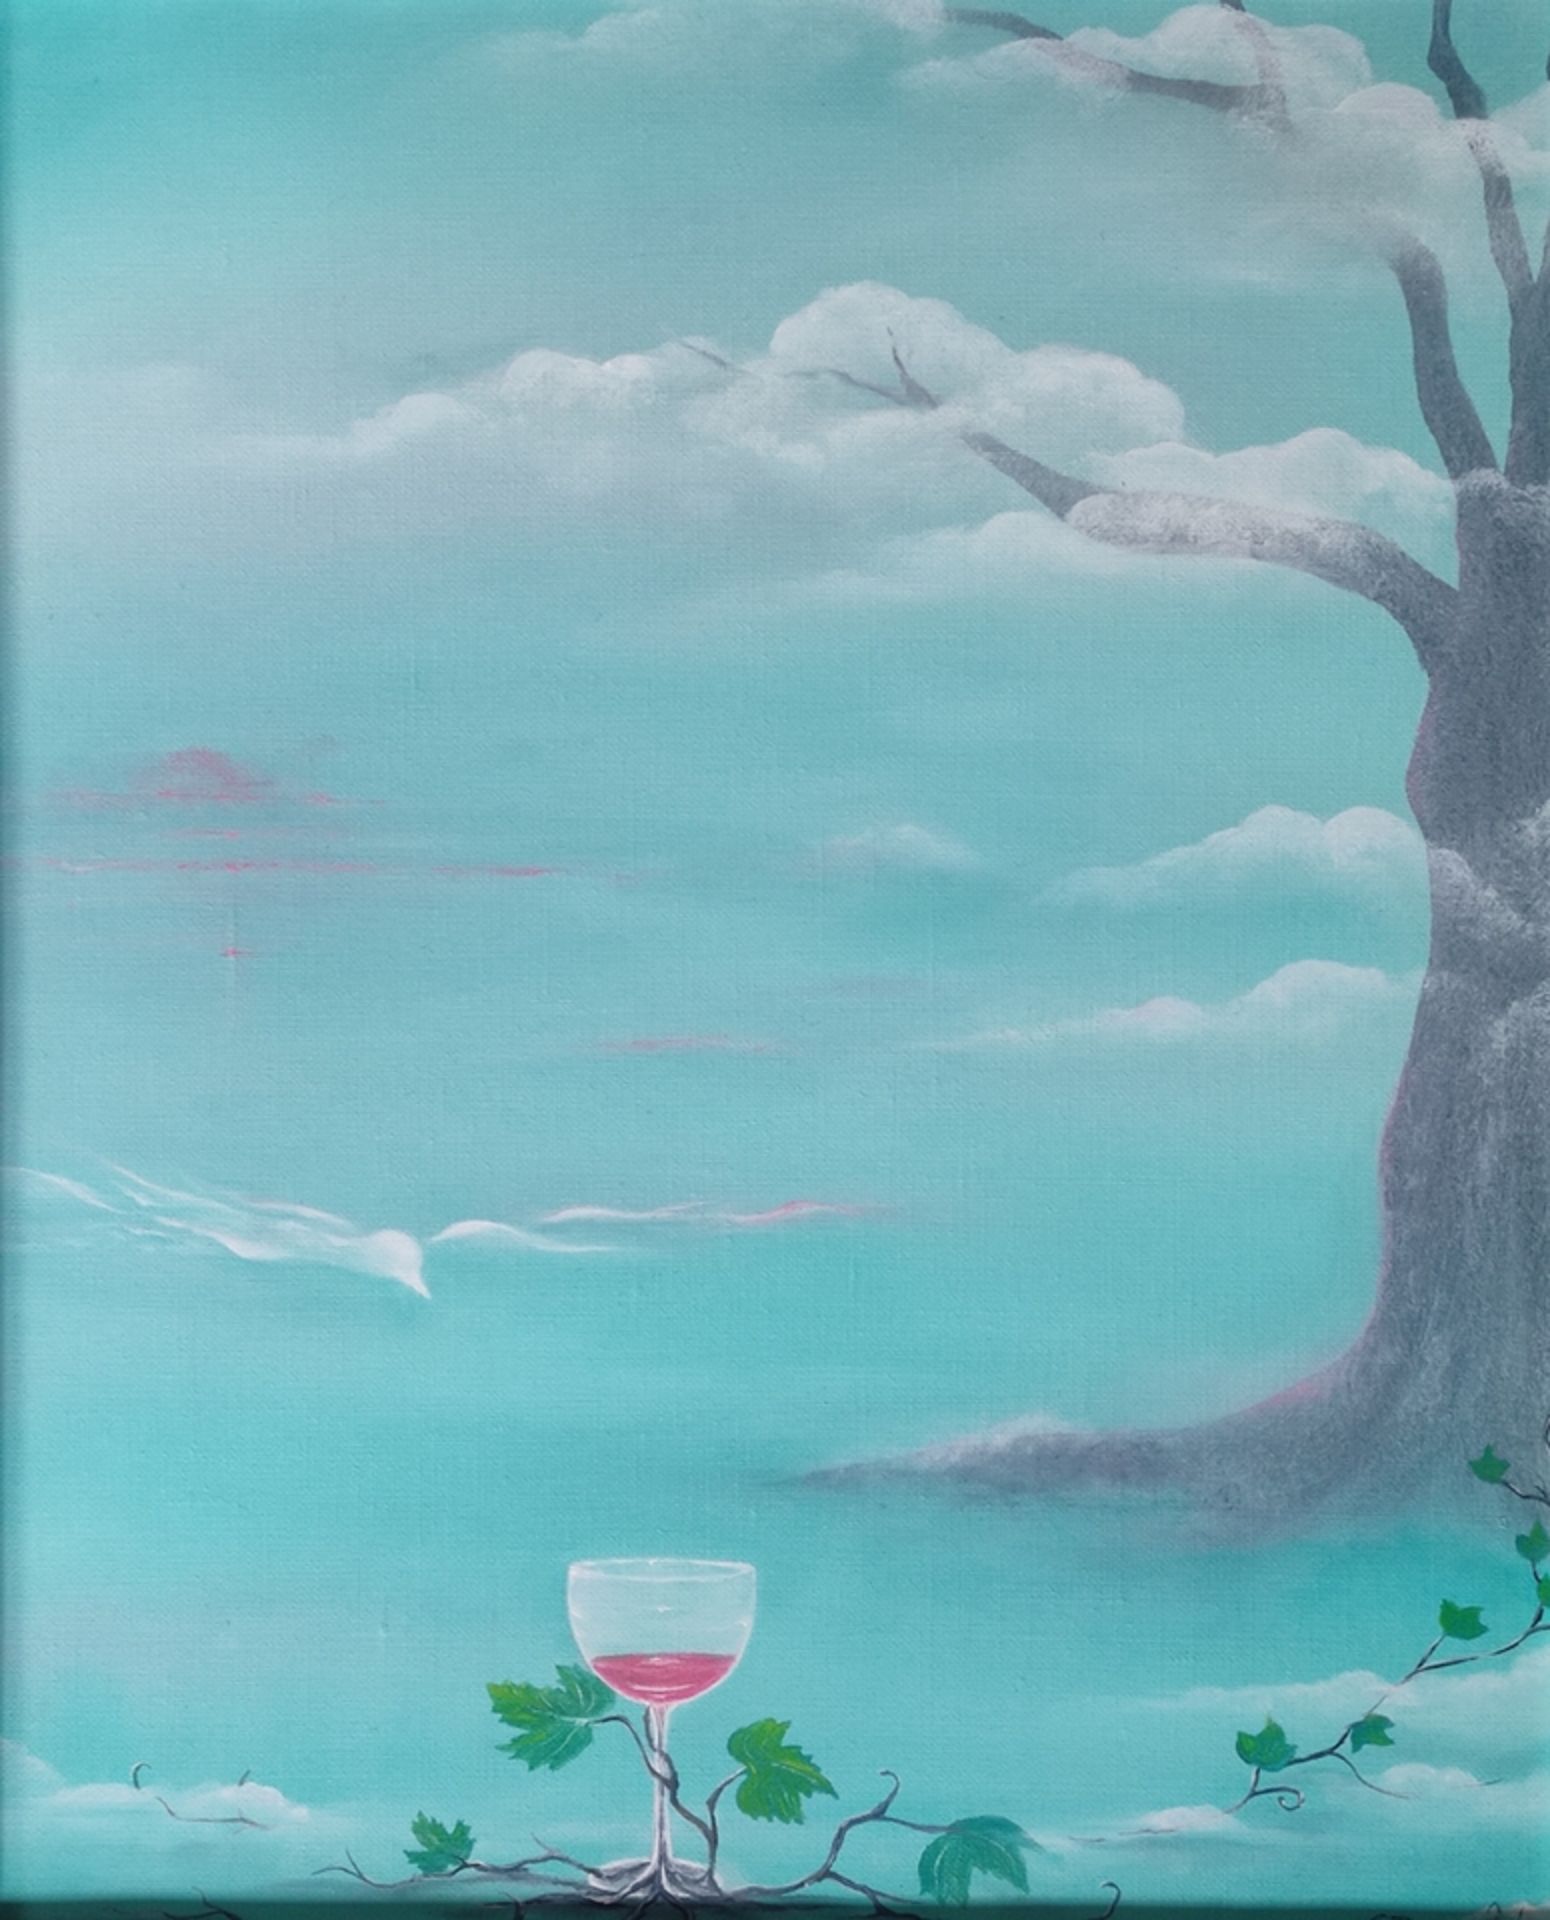 Basalyk, Edelgard (1946) "Für Monika", Weinglas umrankt von wilden Wein, Öl auf Leinwand, rechts un